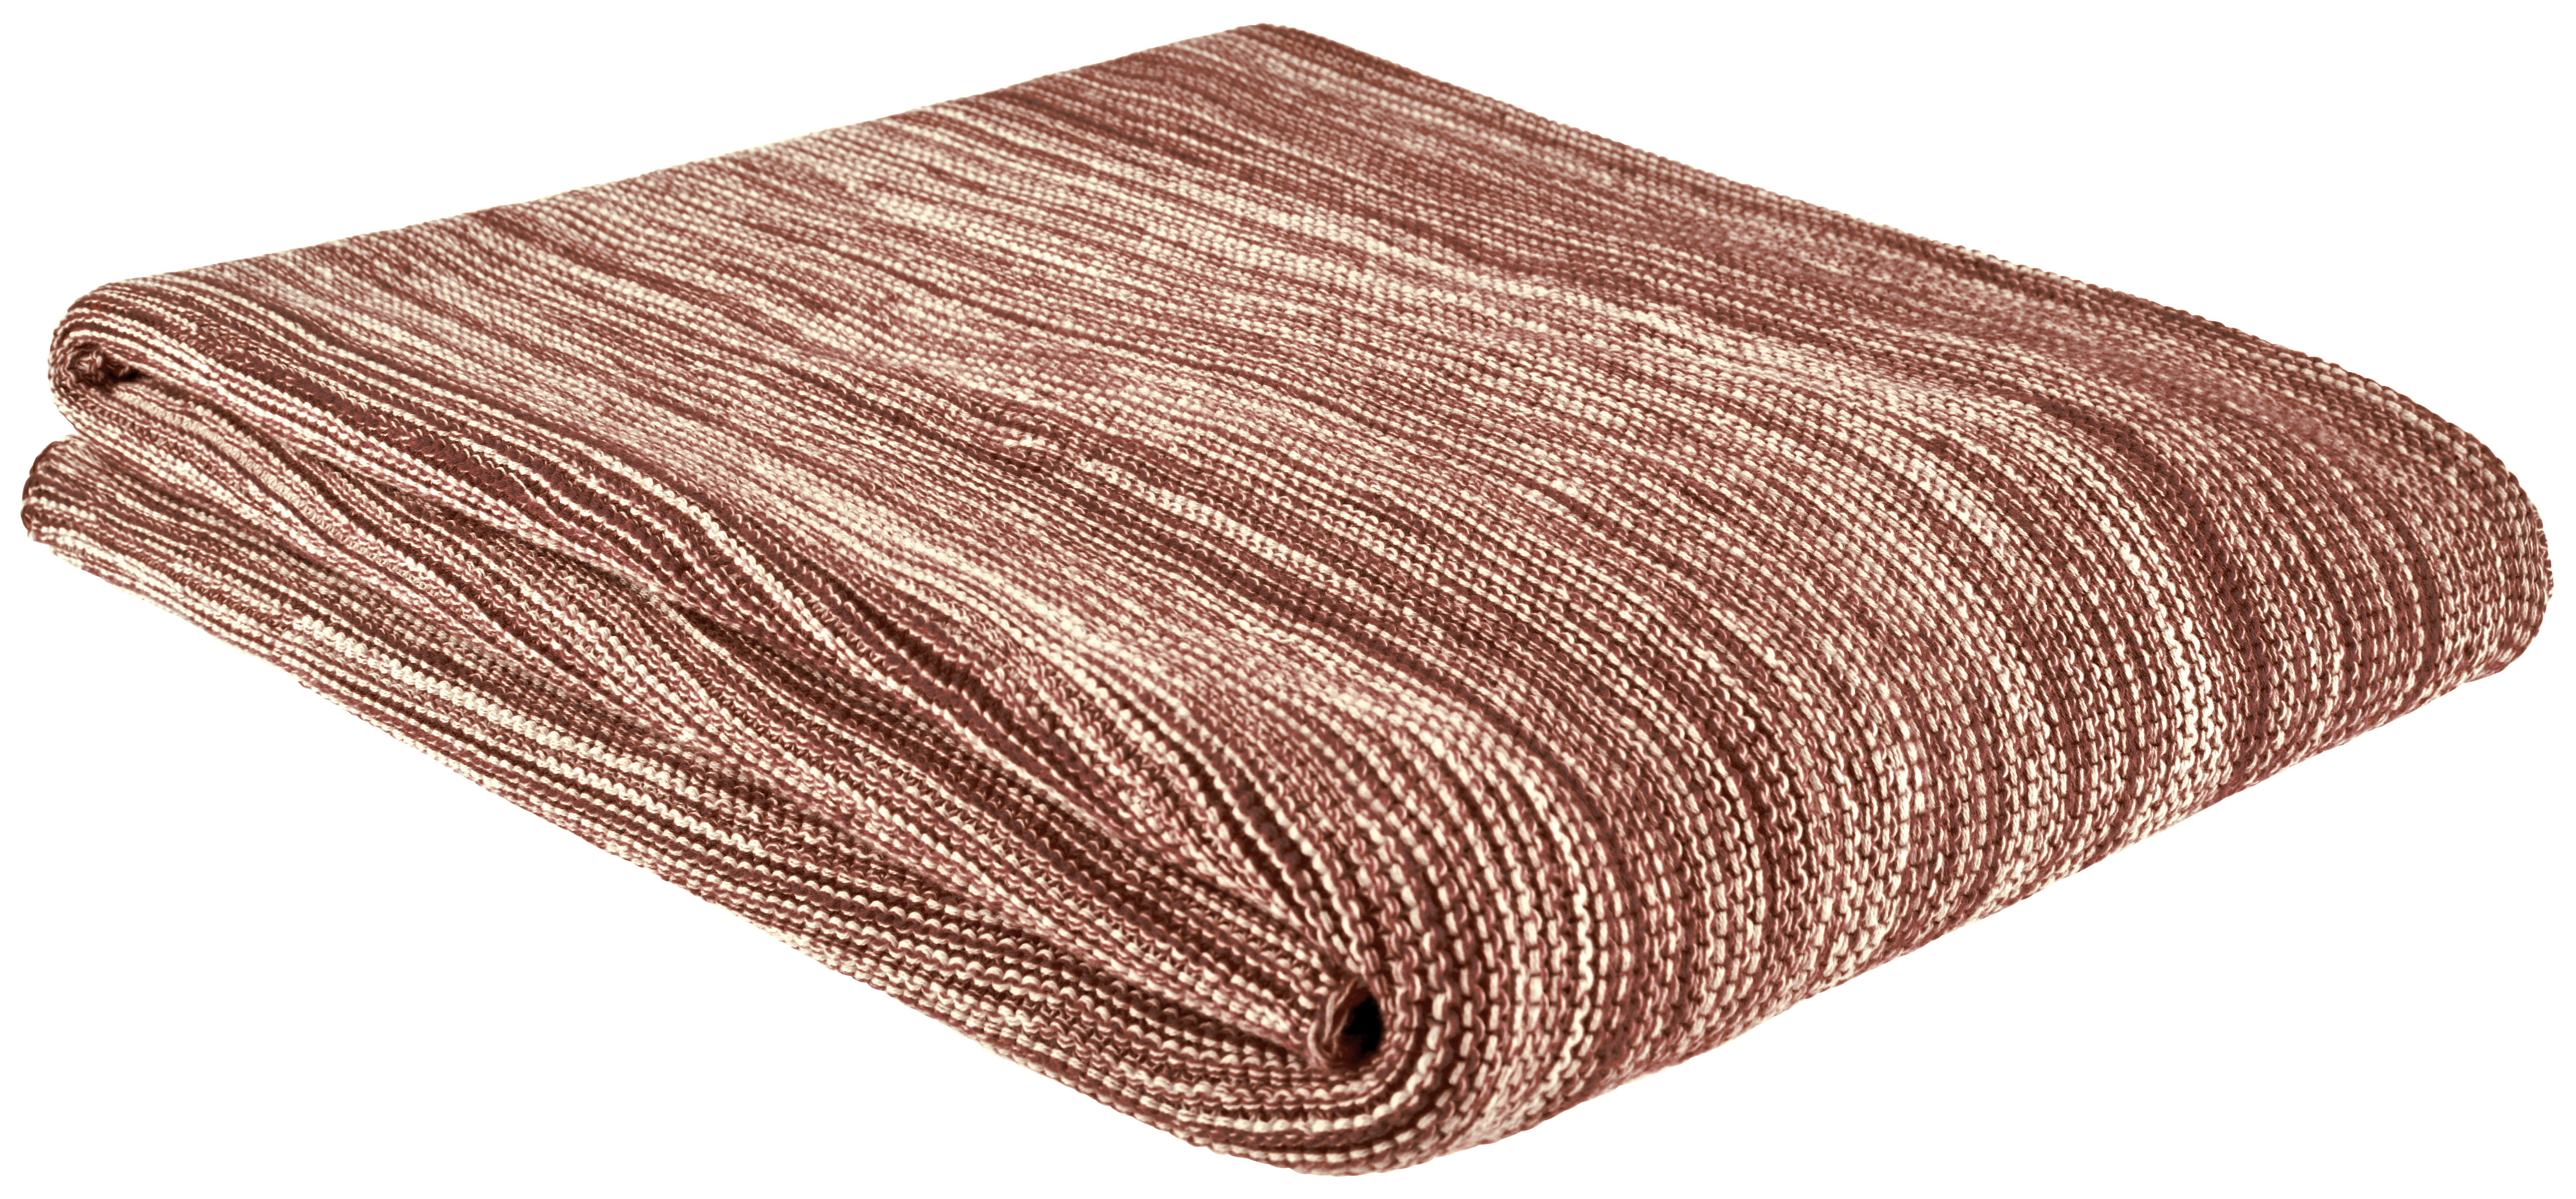 ĆEBE 150/200 cm  - braon, Osnovno, tekstil (150/200cm) - Bio:Vio